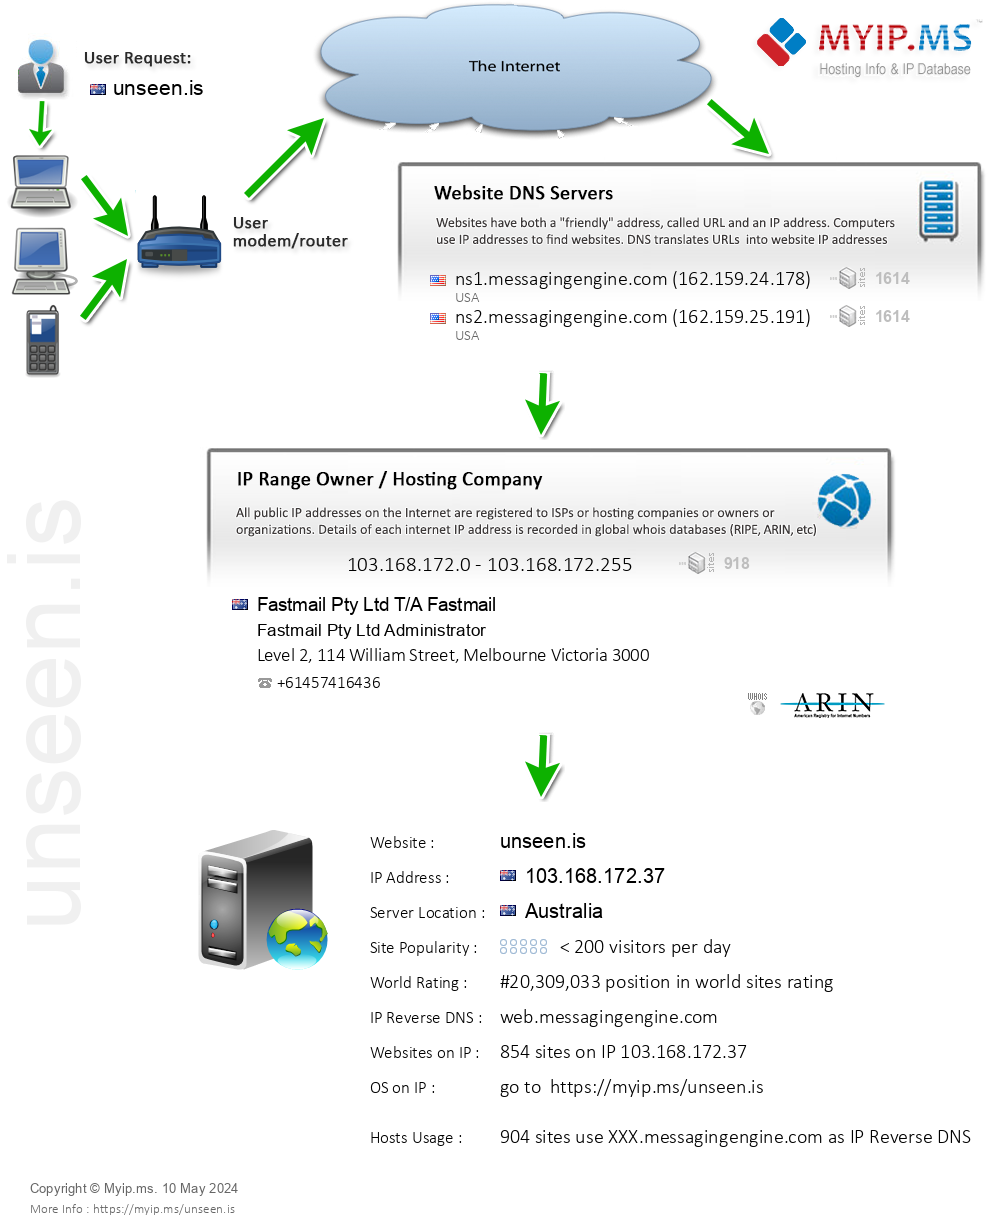 Unseen.is - Website Hosting Visual IP Diagram